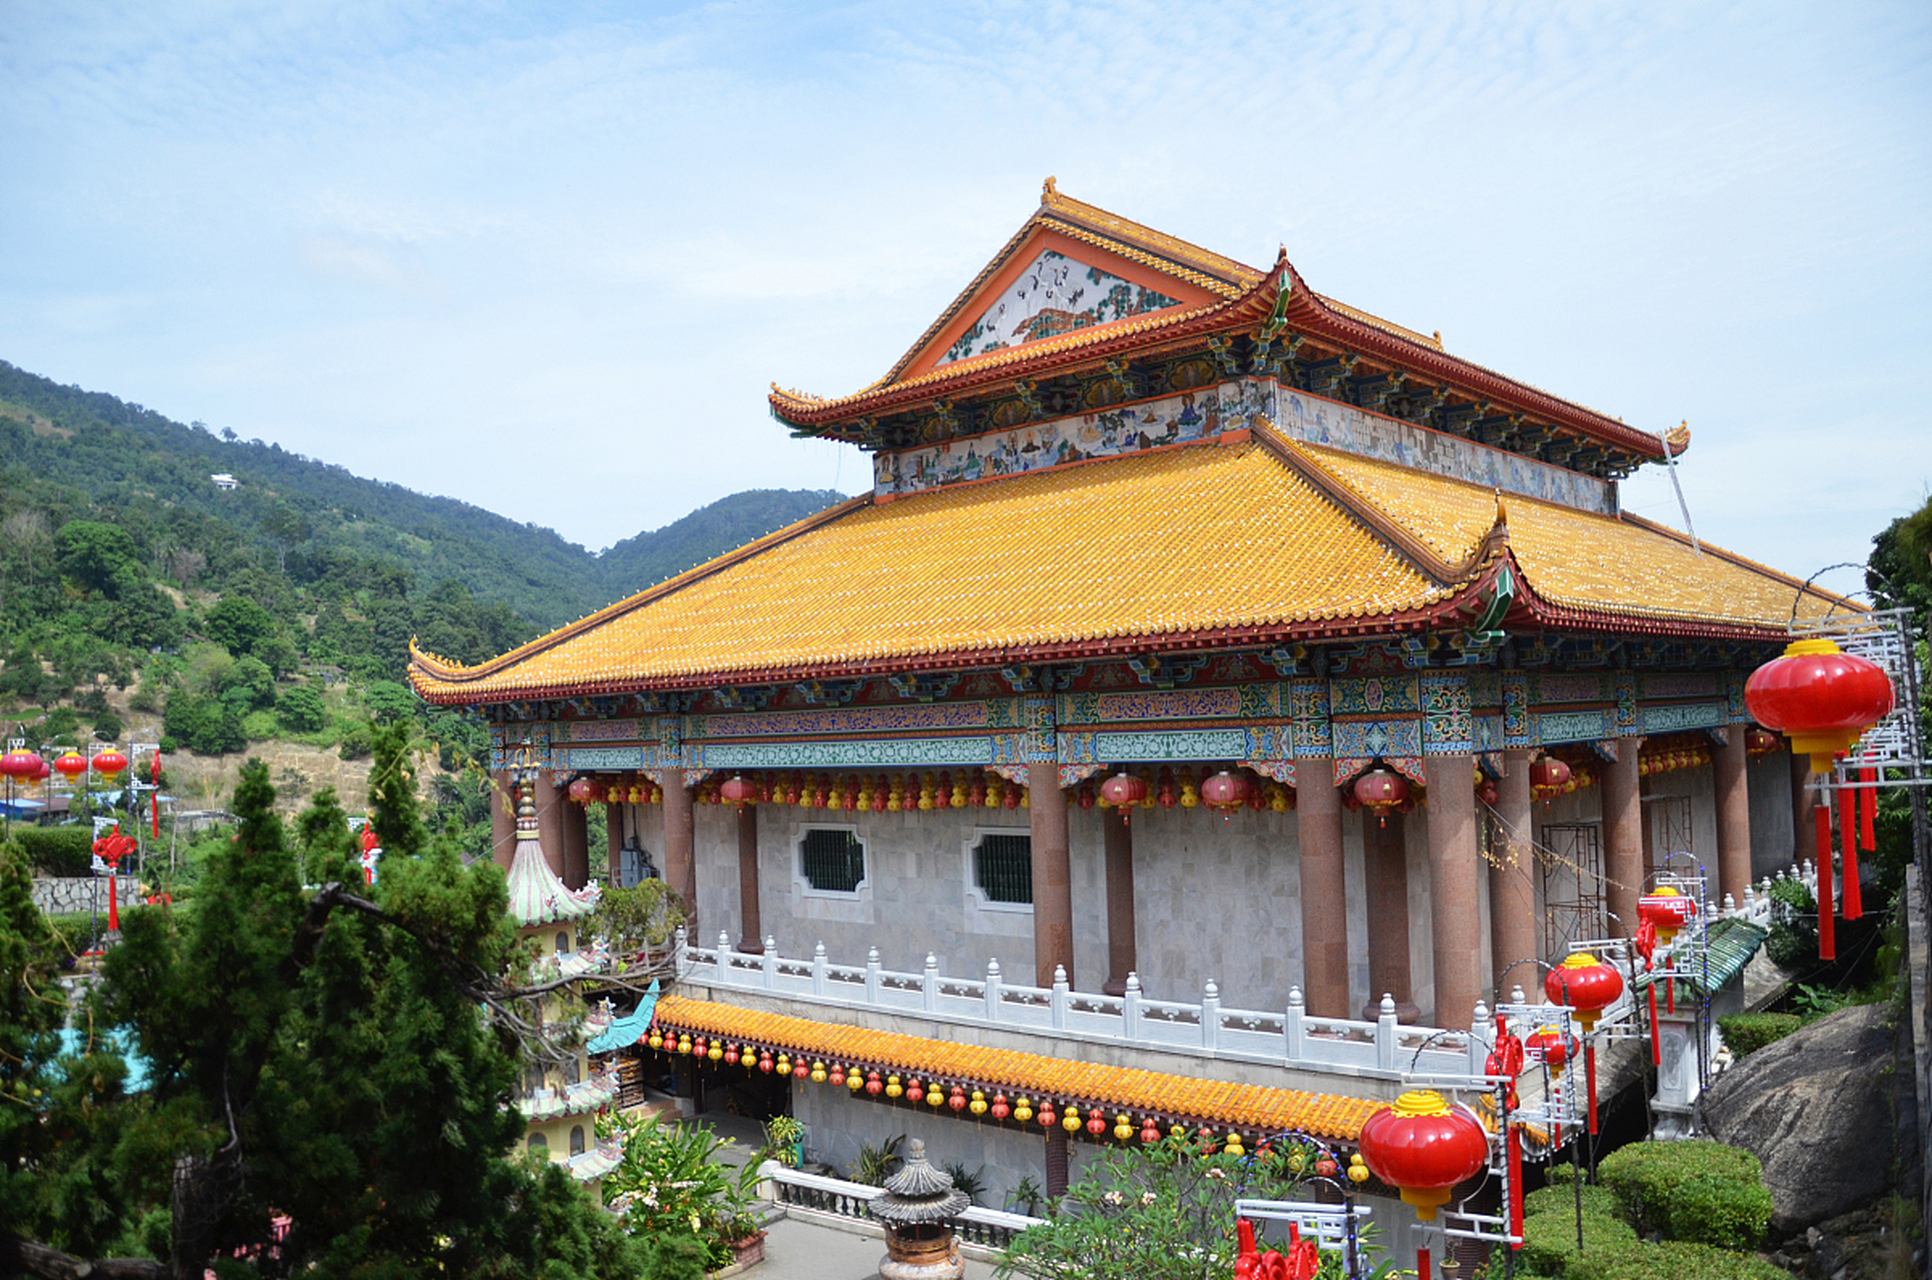 福建省泉州市惠安县的净峰寺,坐落在壮丽的净峰山上,东临净峰惠女湾